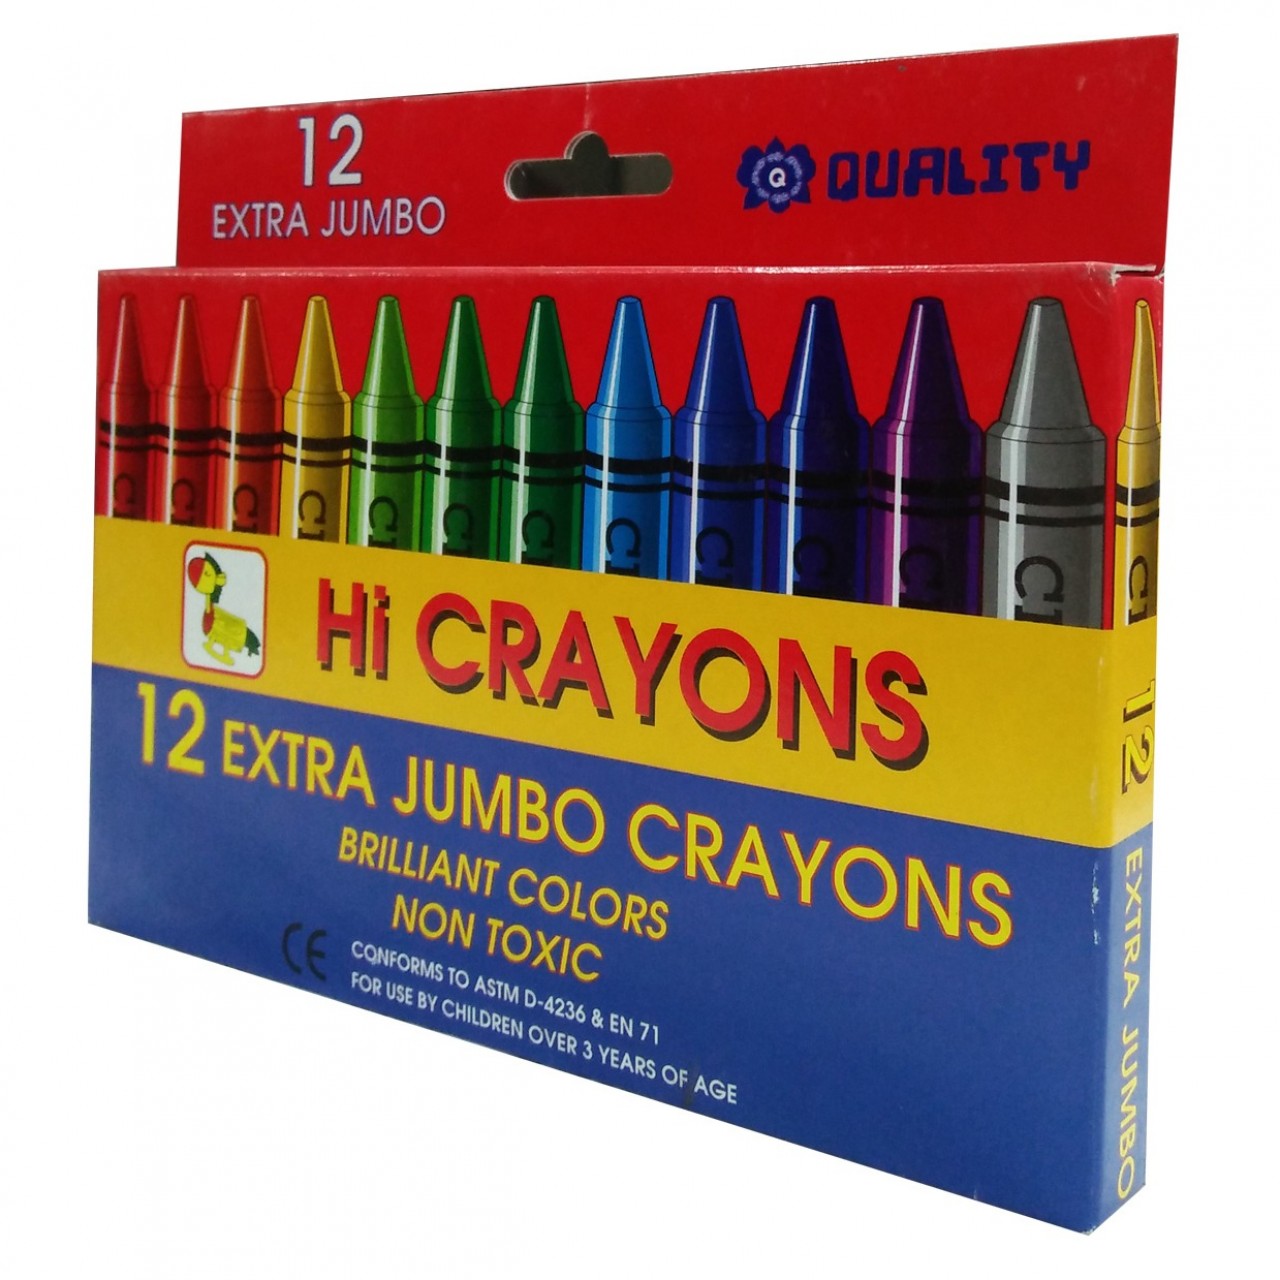 Hi Crayons For Kids - 12 Extra Jumbo Crayons